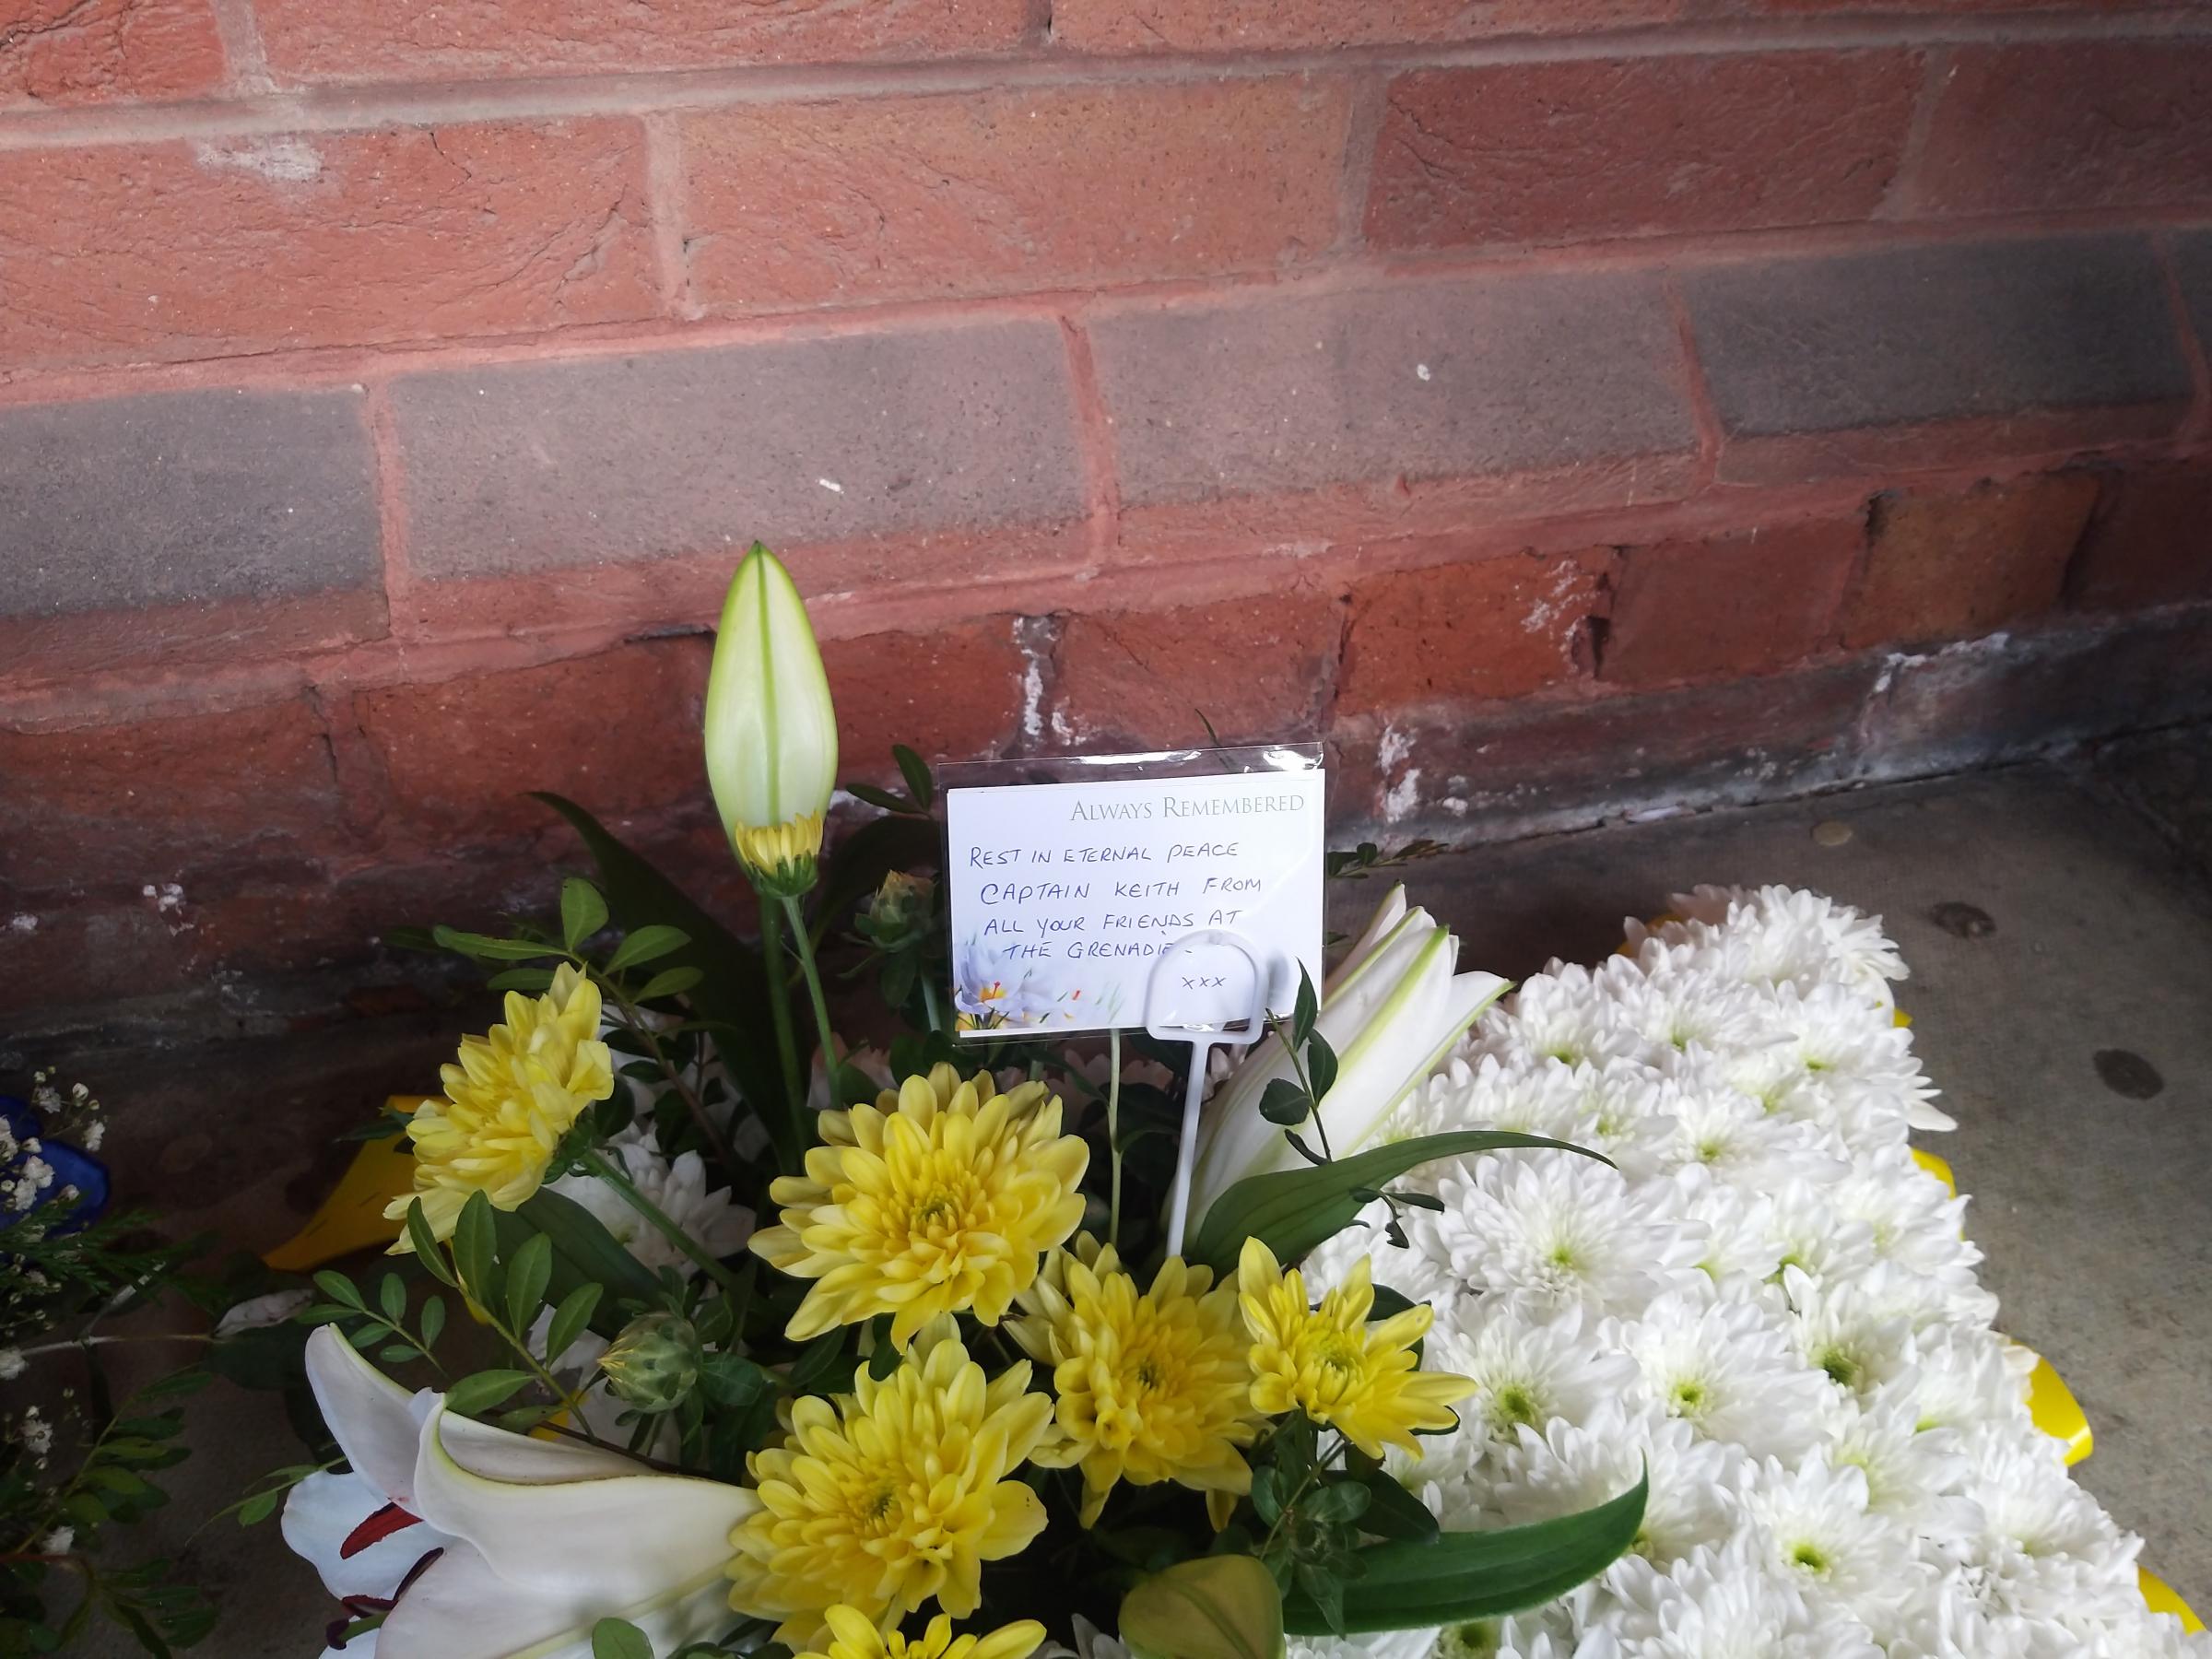 Floral tributes at the Crematorium